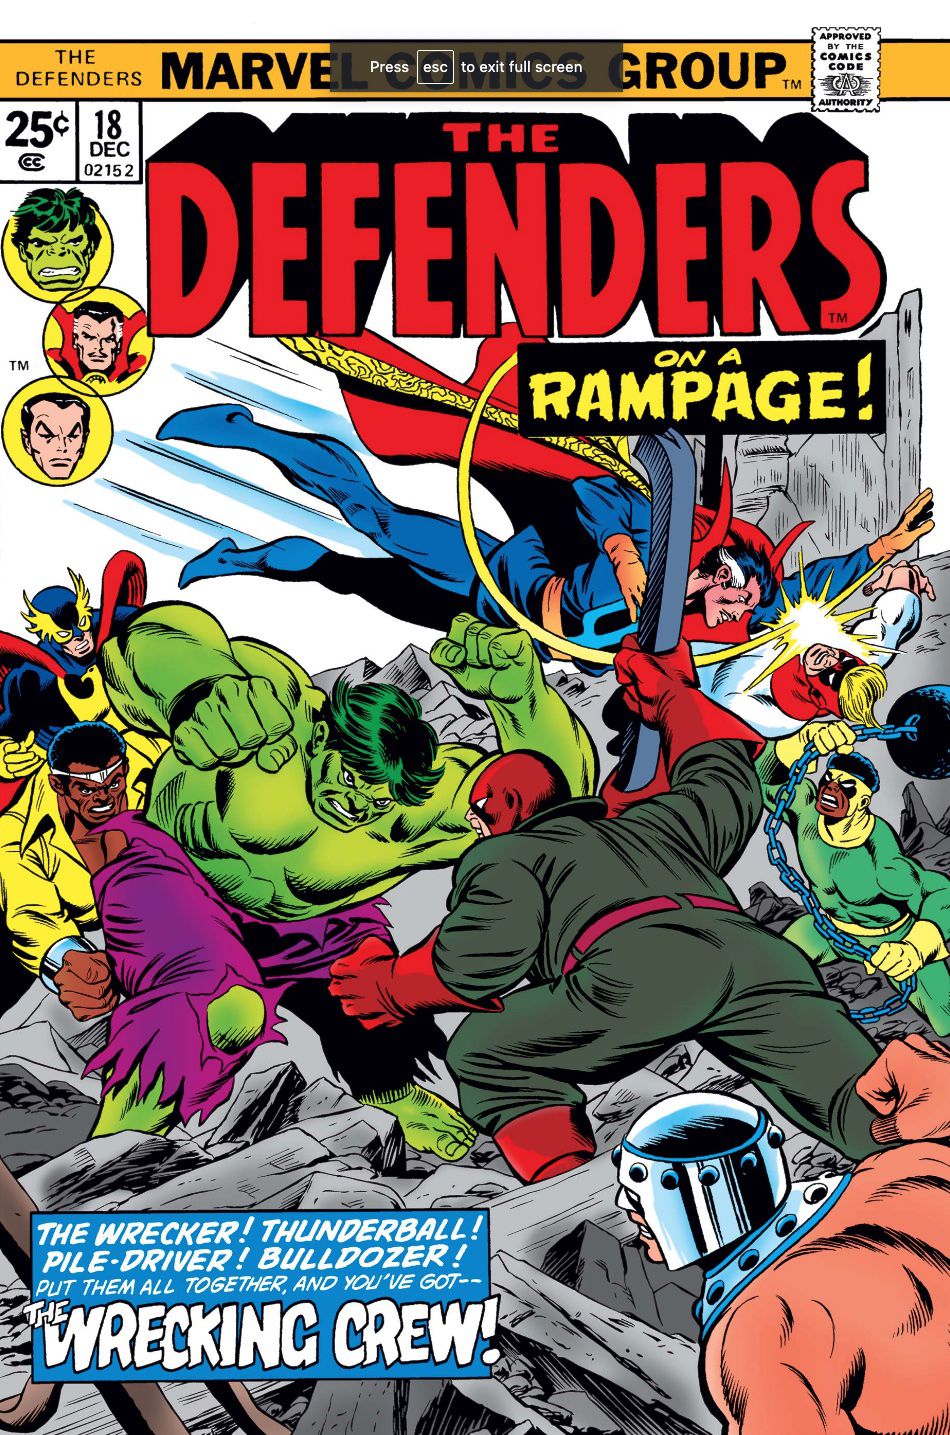 Copertina di Defenders con The Wrecking Crew che si scontra con Hulk e Doctor Strange